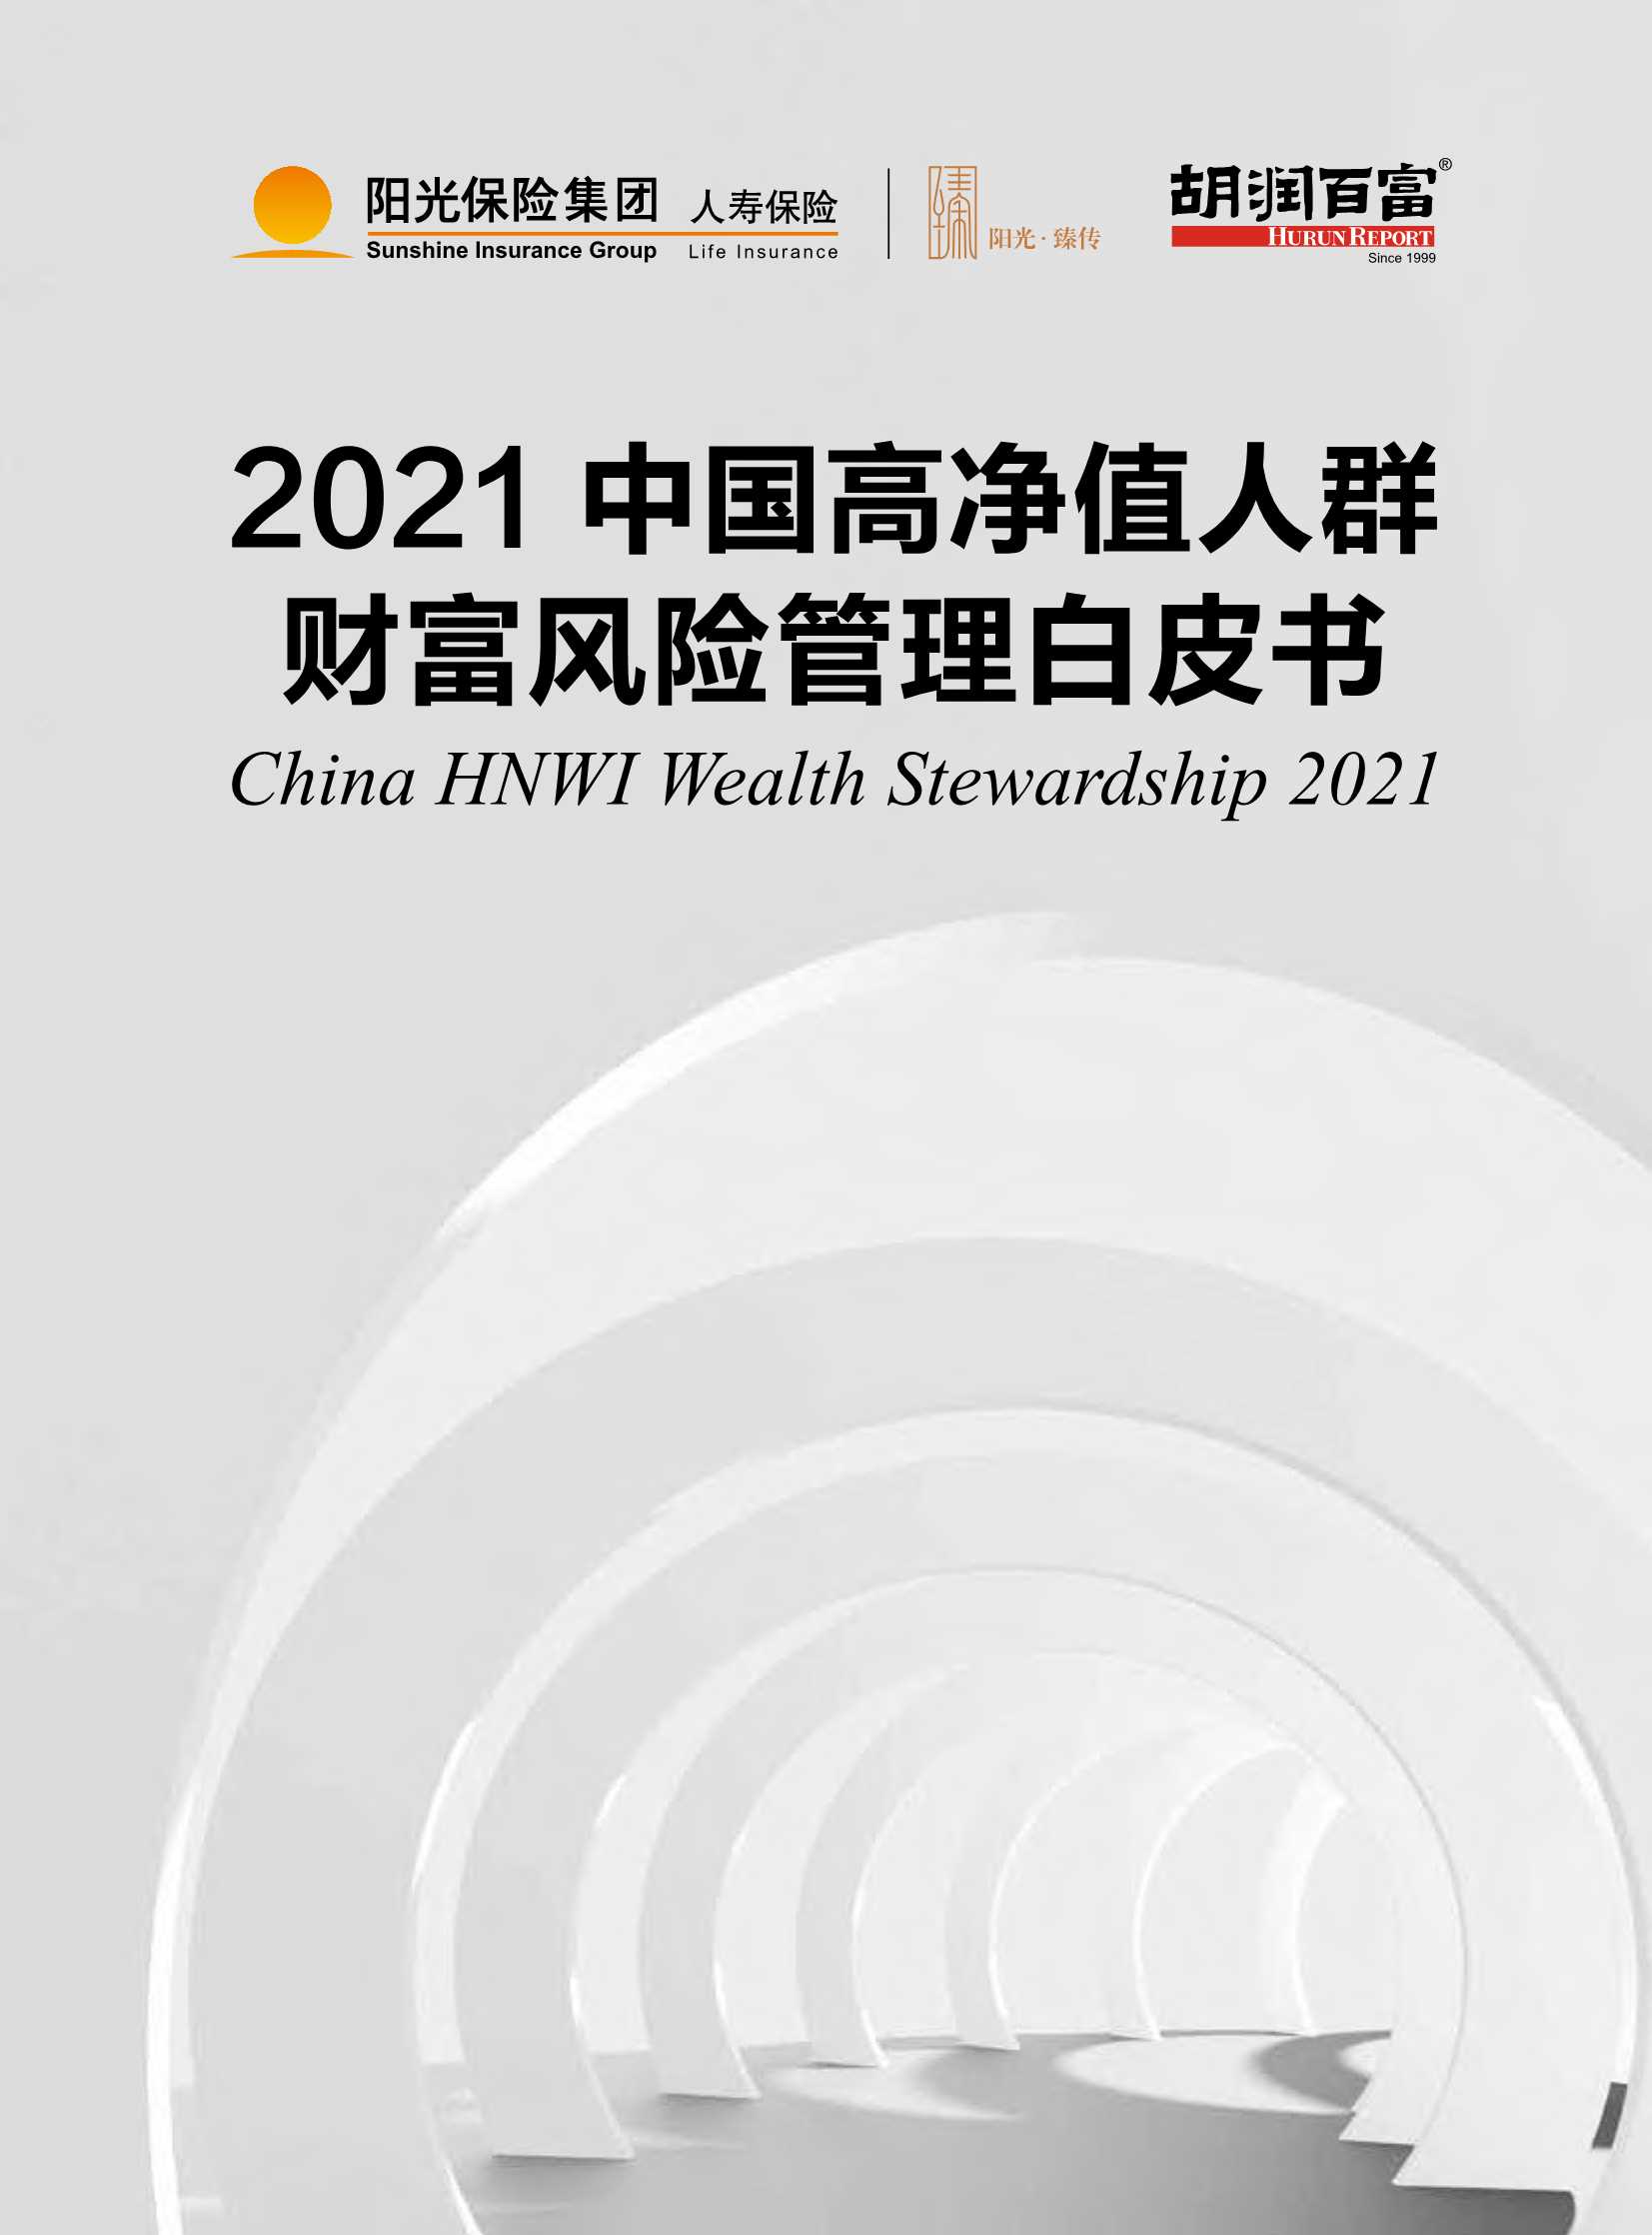 胡润百富-2021中国高净值人群财富风险管理白皮书-2021.12-73页